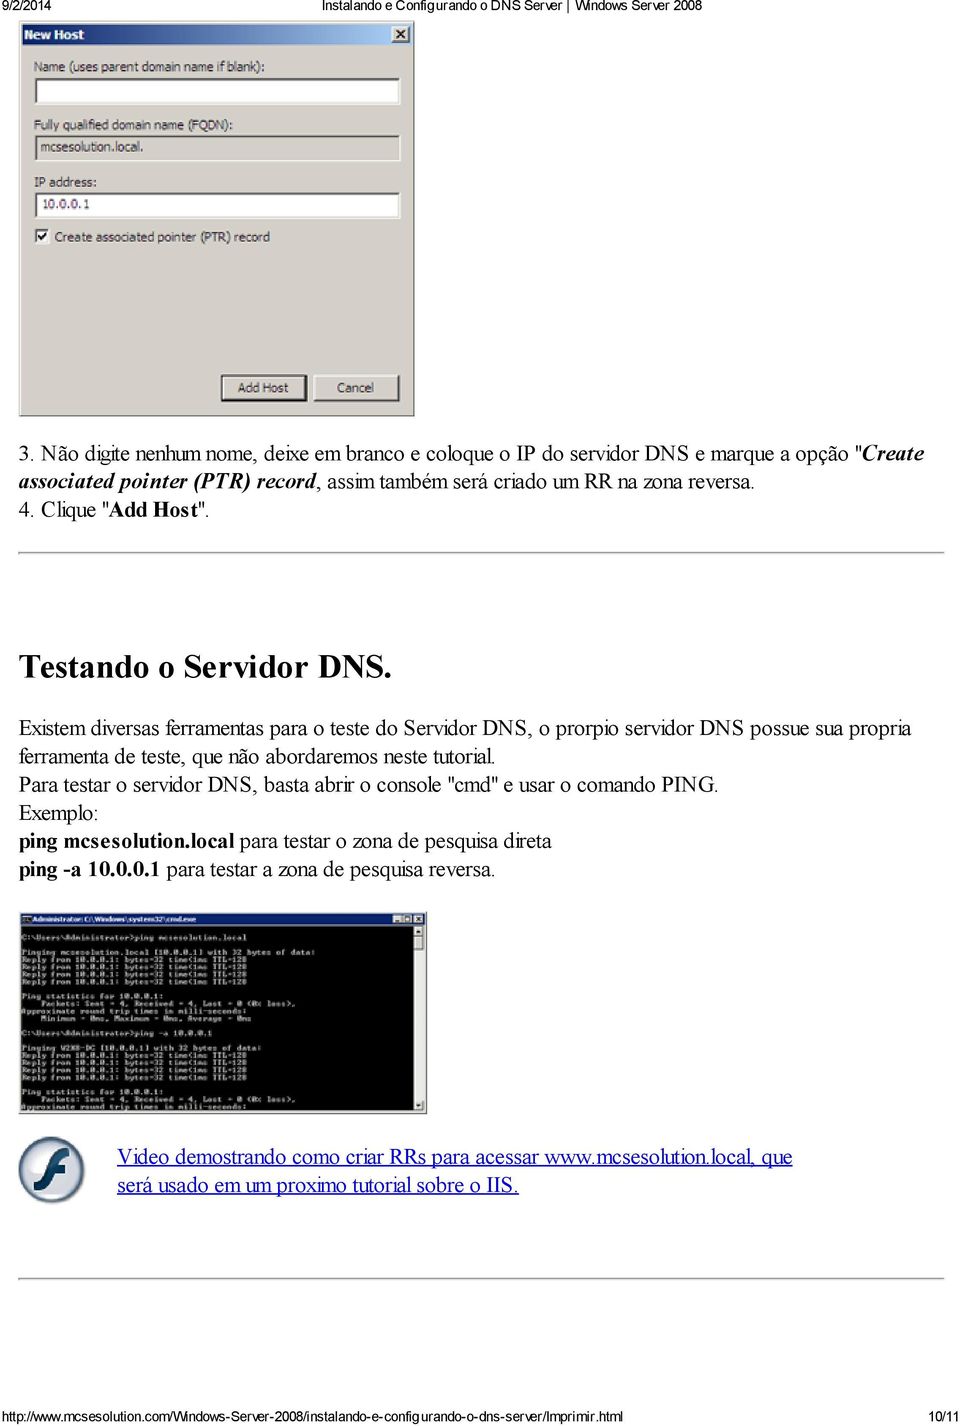 Existem diversas ferramentas para o teste do Servidor DNS, o prorpio servidor DNS possue sua propria ferramenta de teste, que não abordaremos neste tutorial.